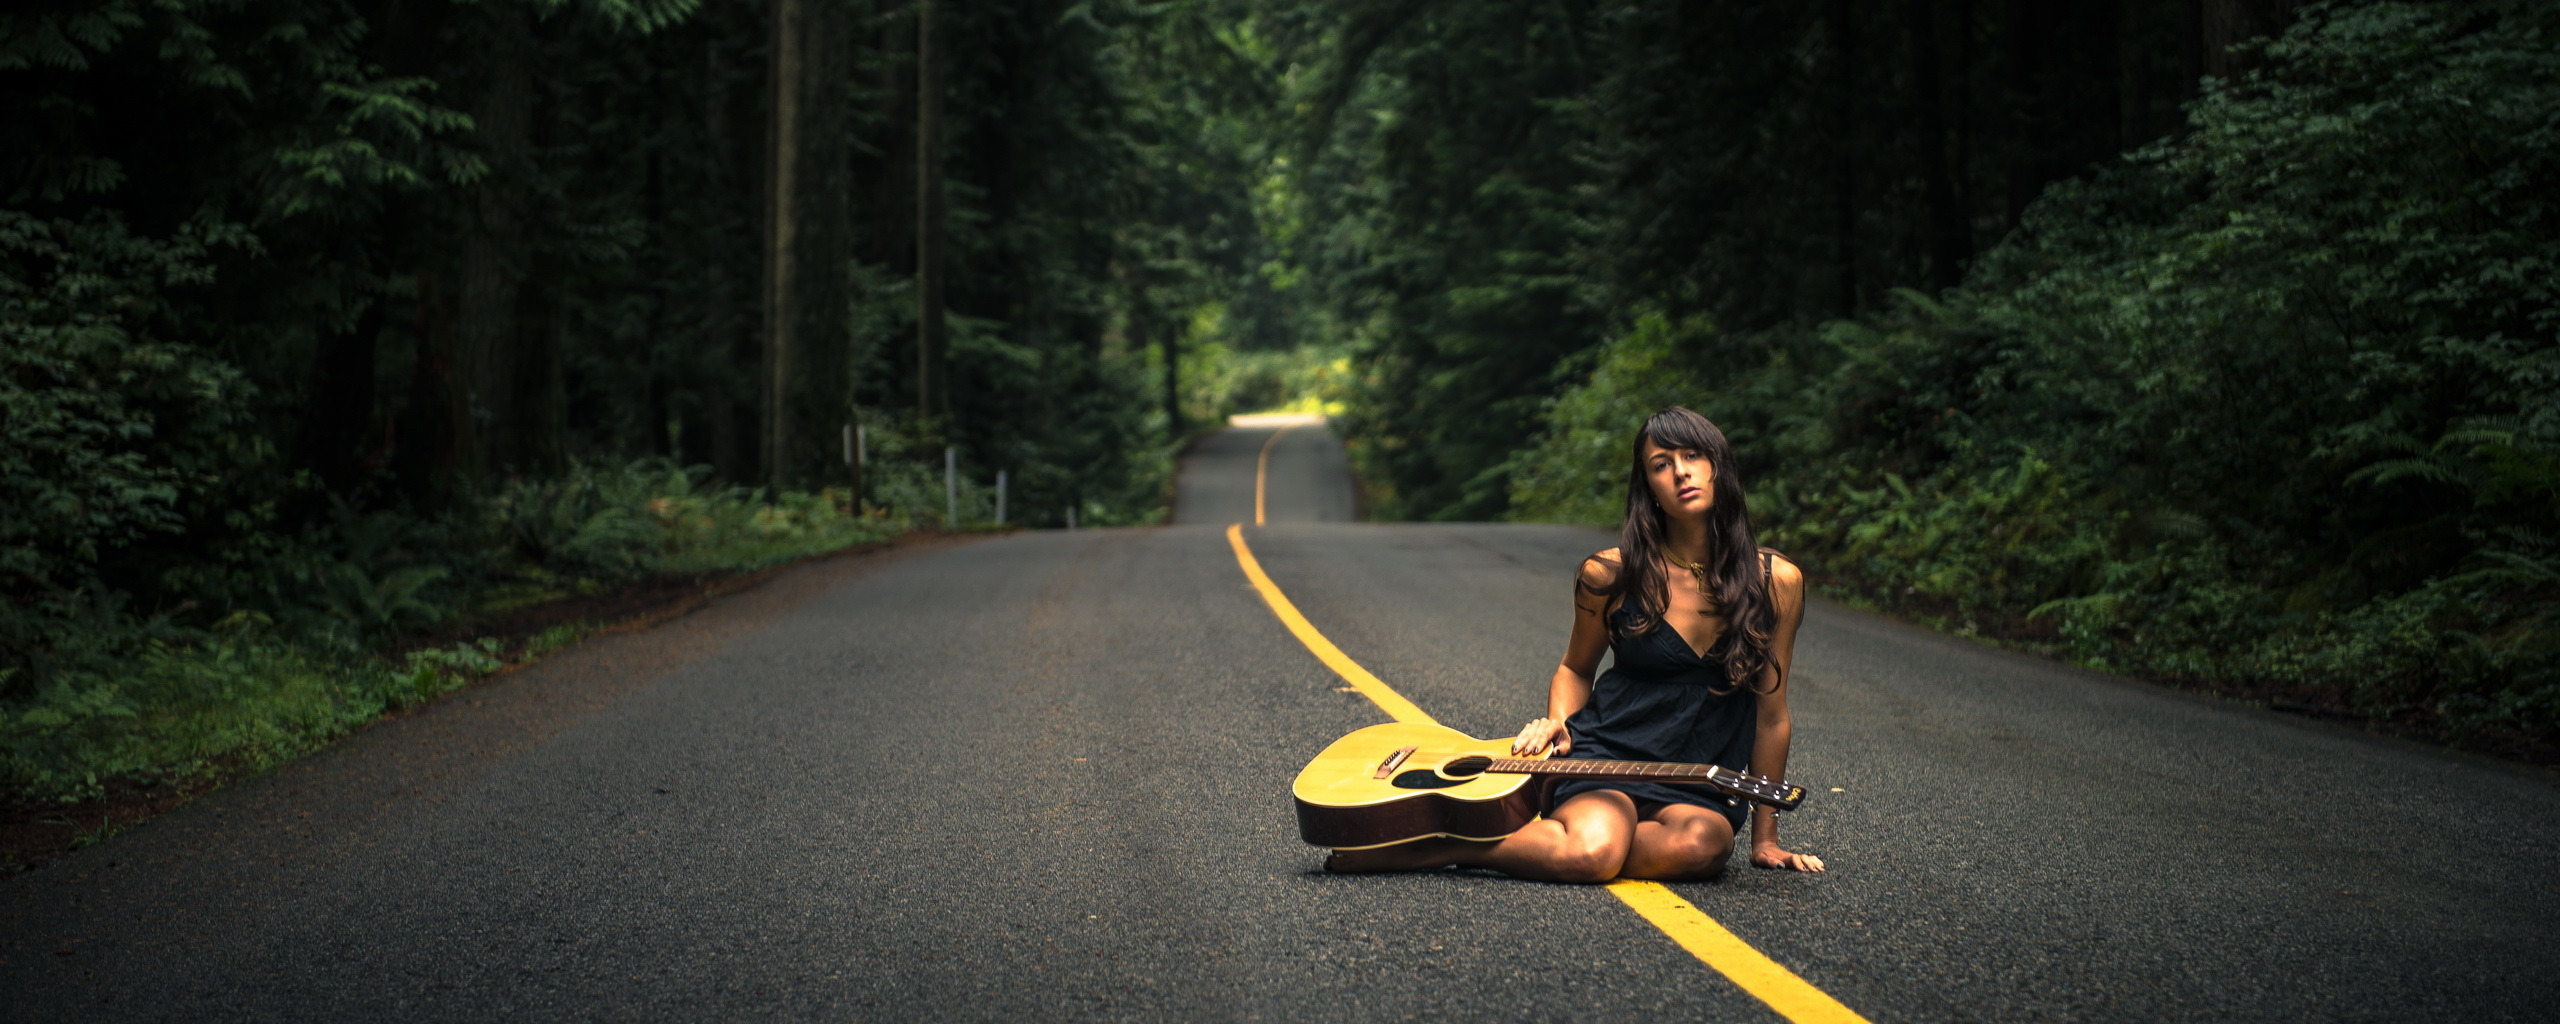 Девушка на дороге. Музыкальная дорога. Девушка с гитарой на дороге. Макет девушки на дороге. Четыре дороги песня